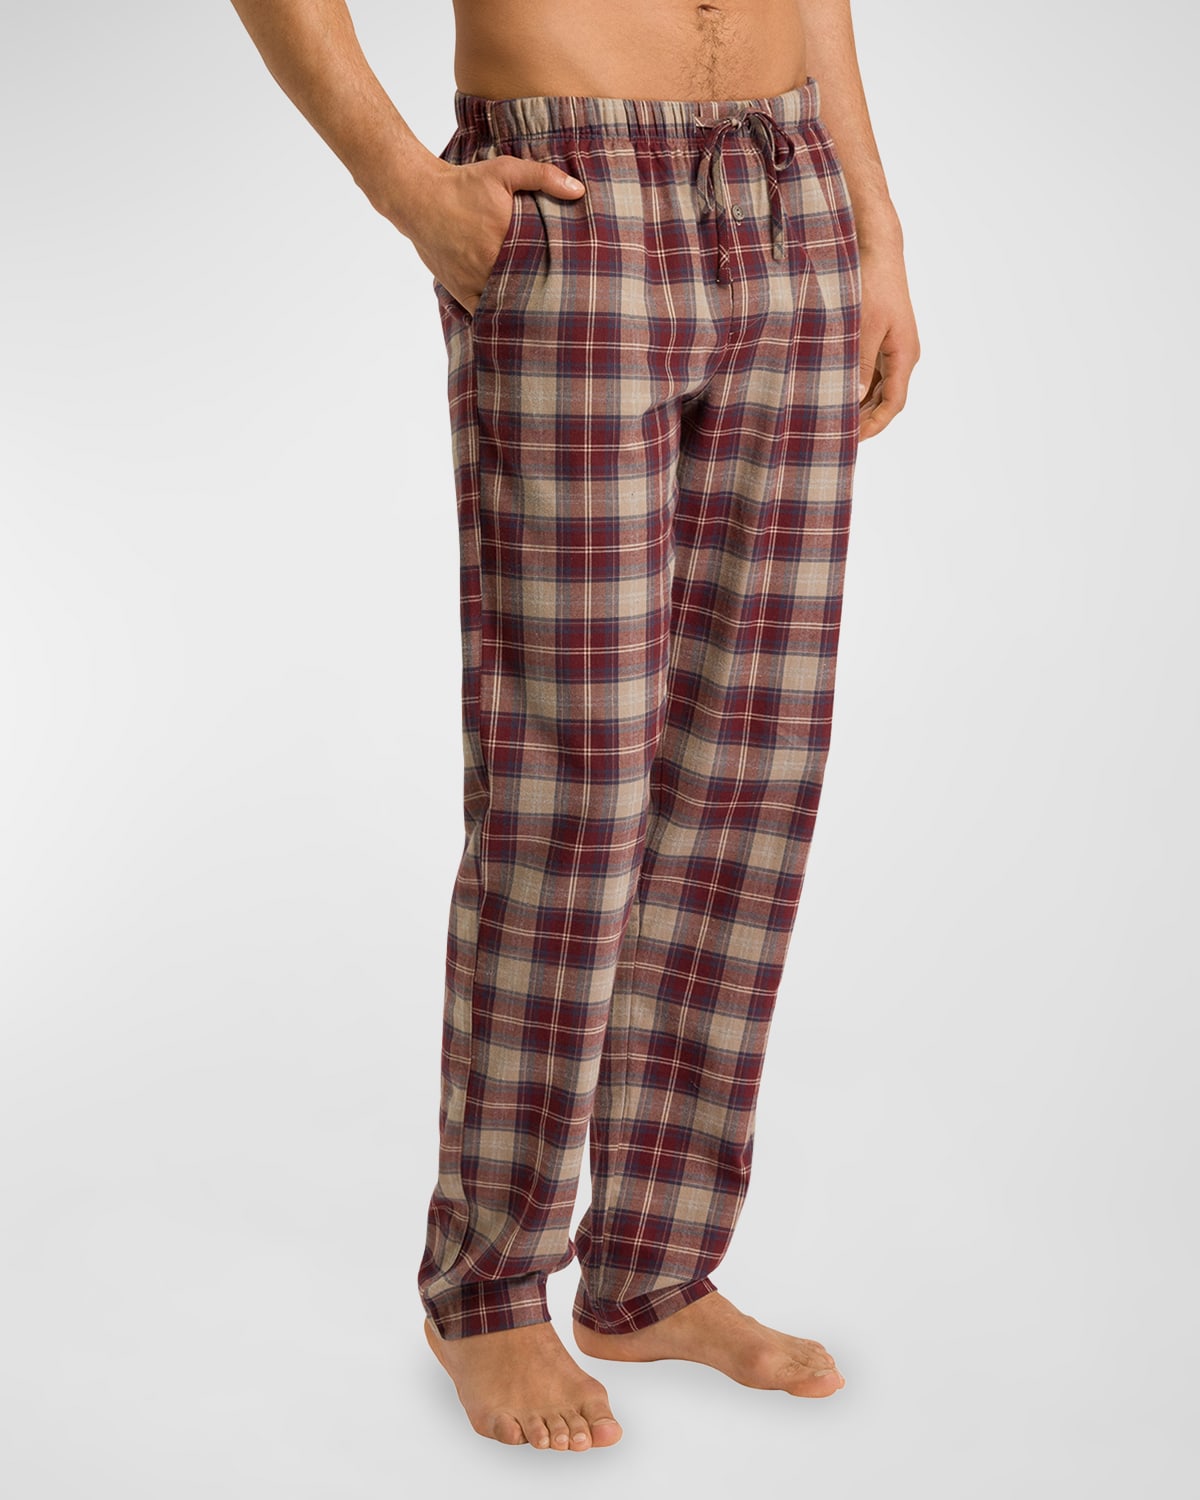 Shop Hanro Men's Cozy Comfort Flannel Pajama Pants In Homey Check